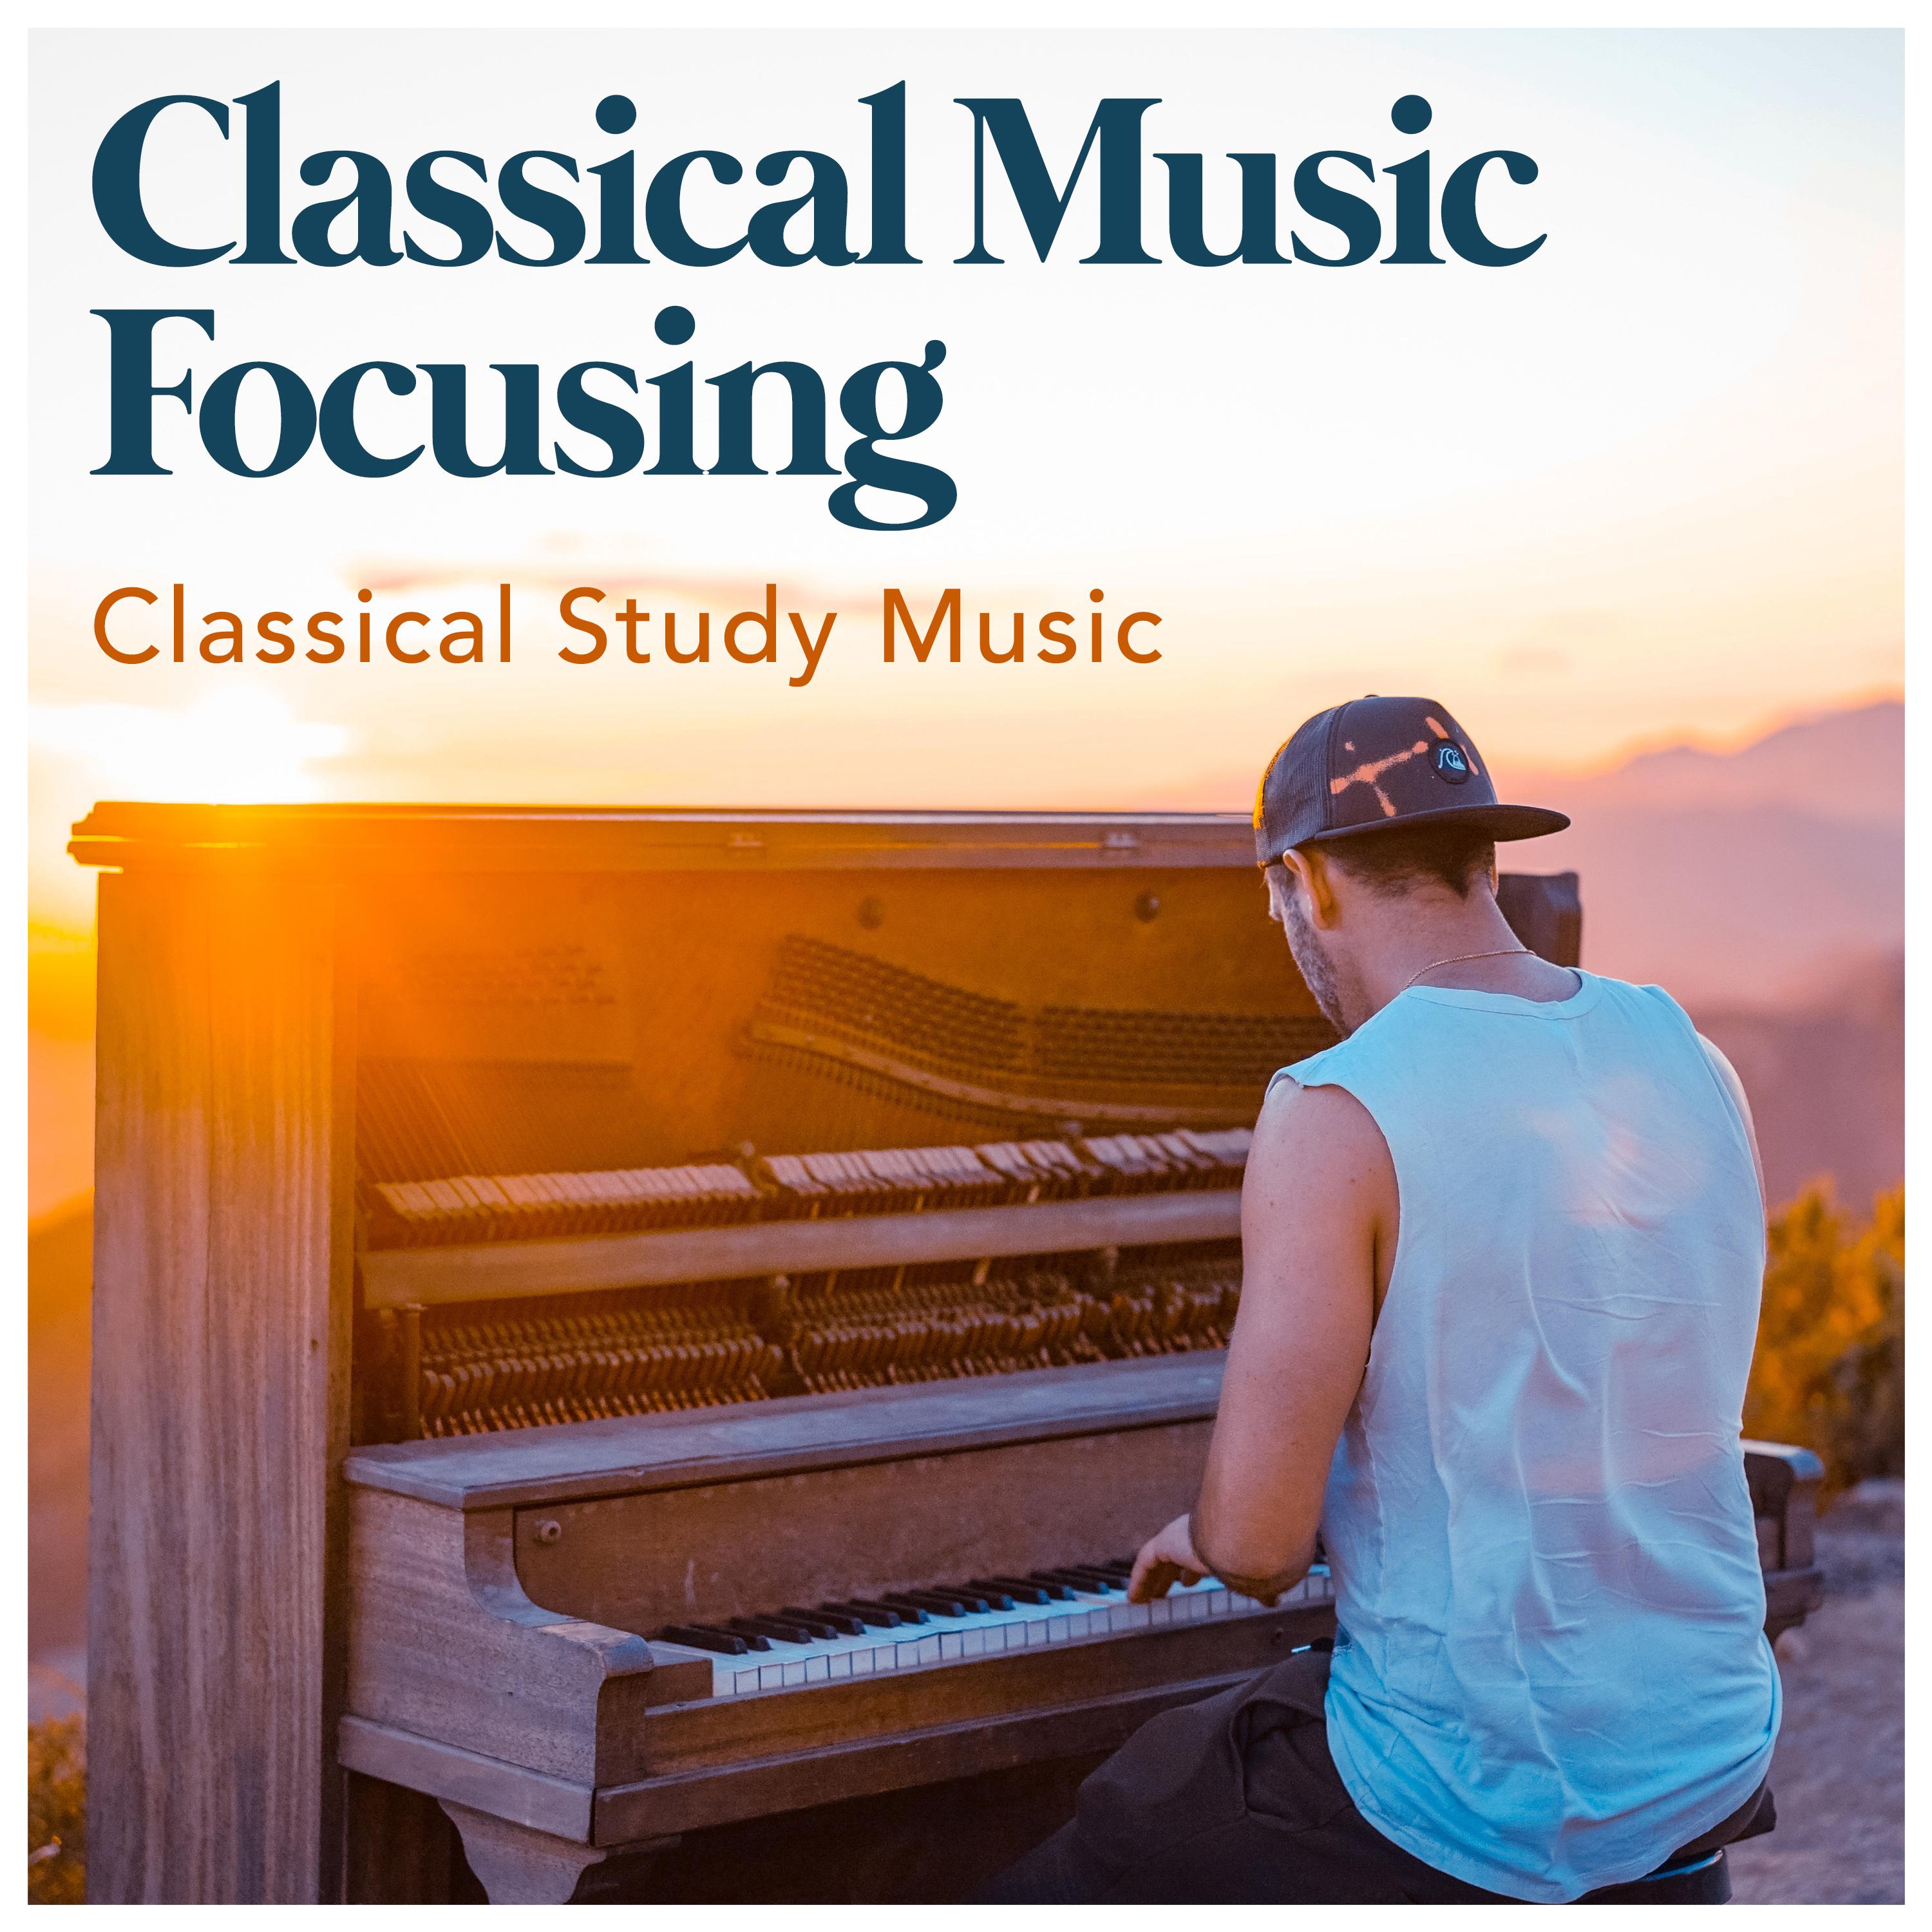 Classical Music Focusing